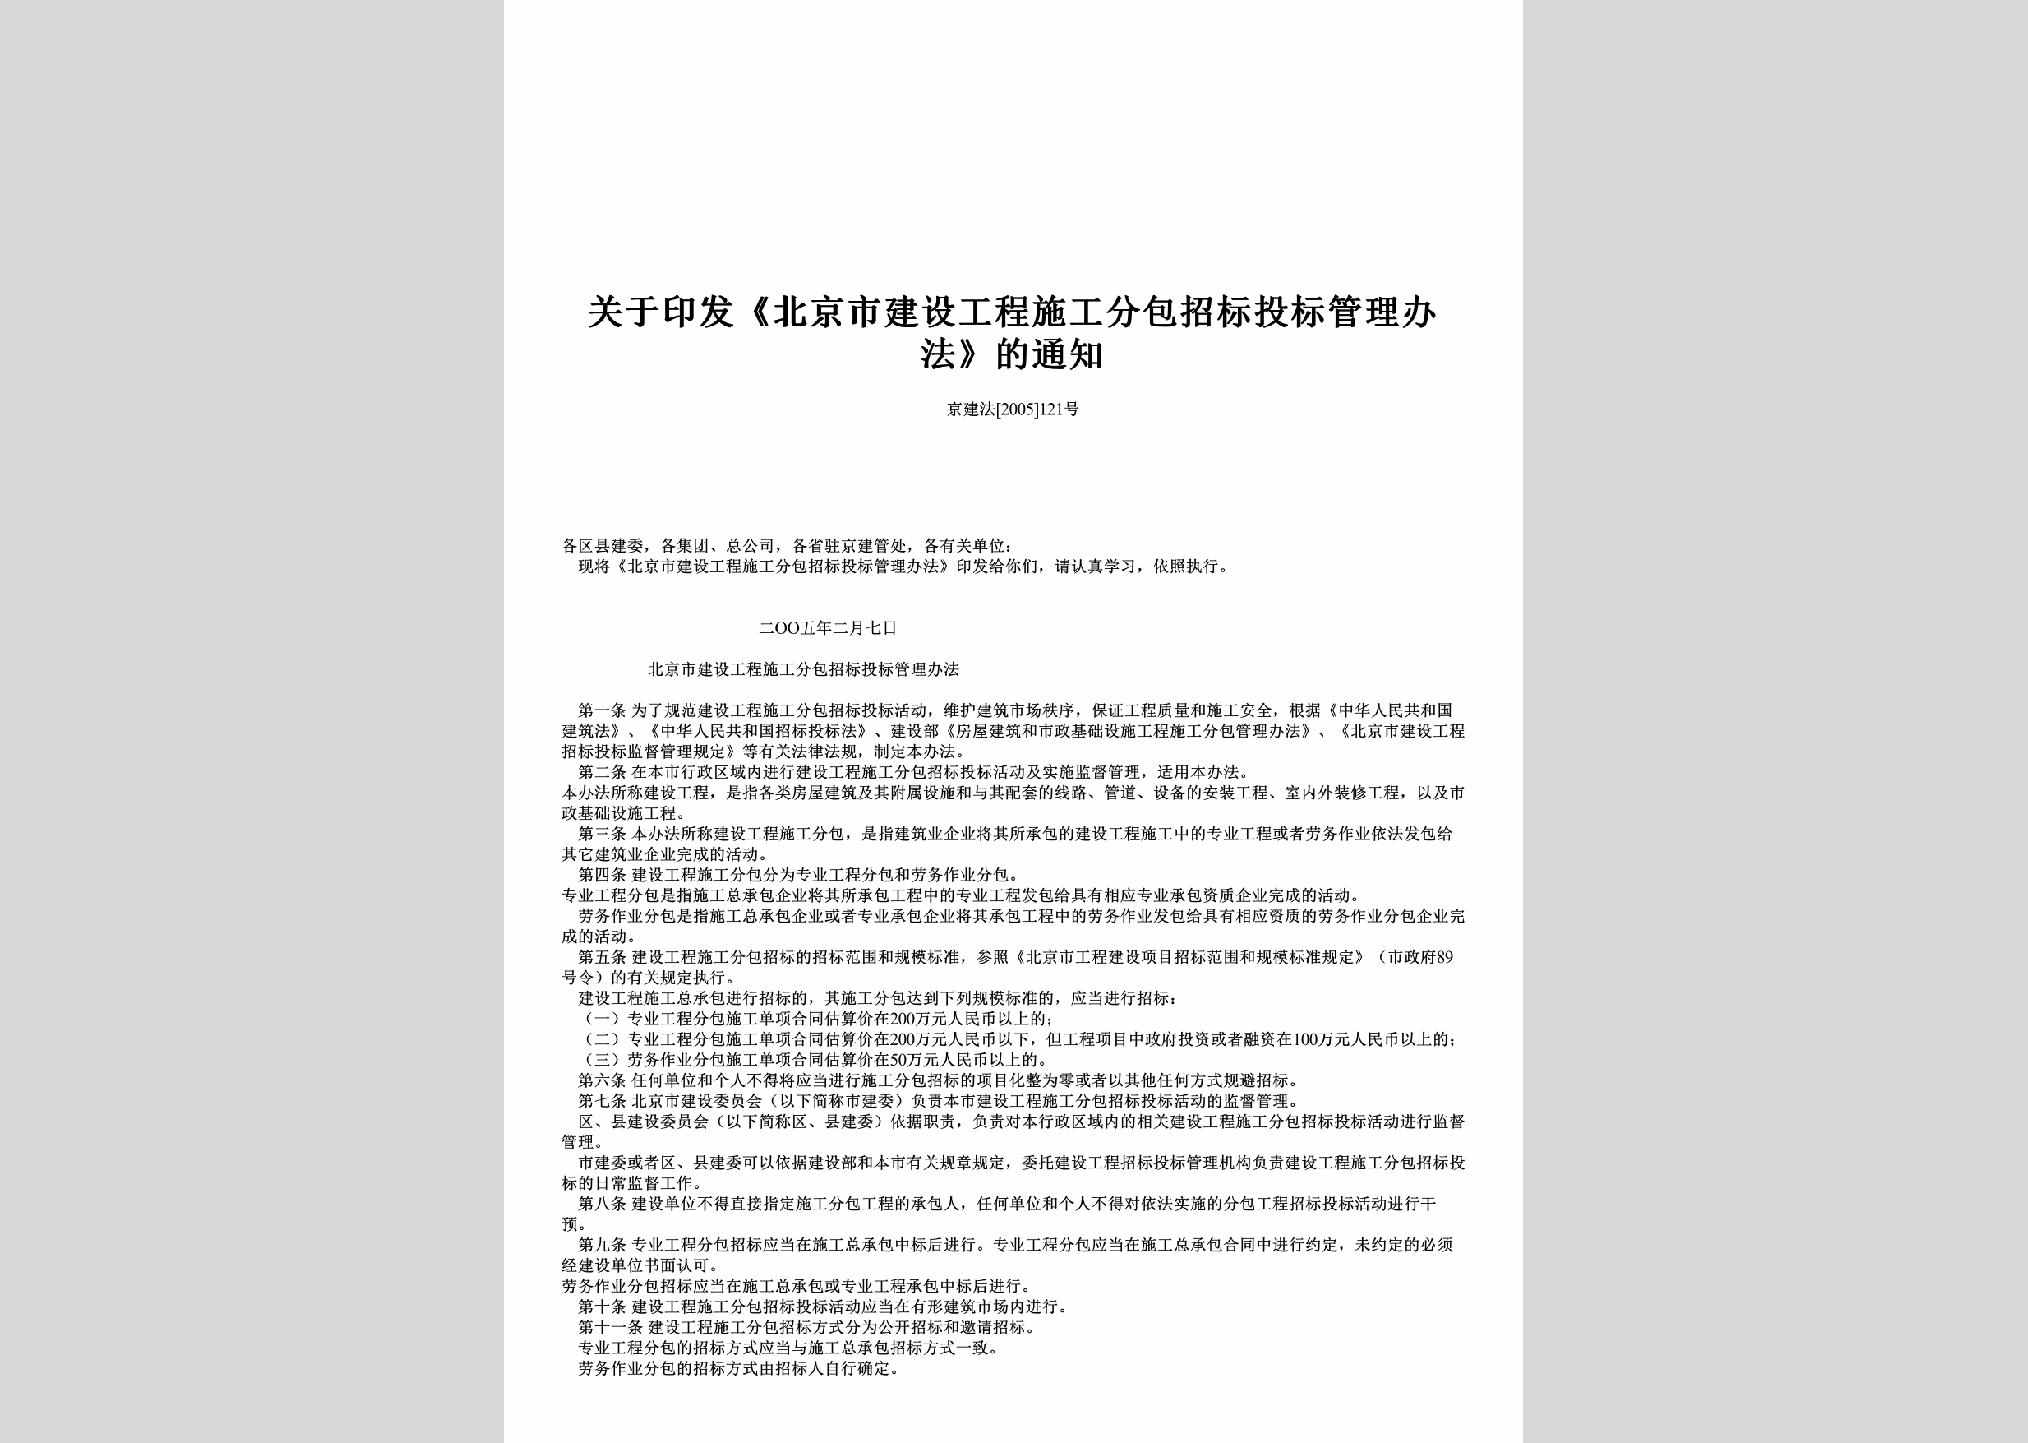 京建法[2005]121号：关于印发《北京市建设工程施工分包招标投标管理办法》的通知